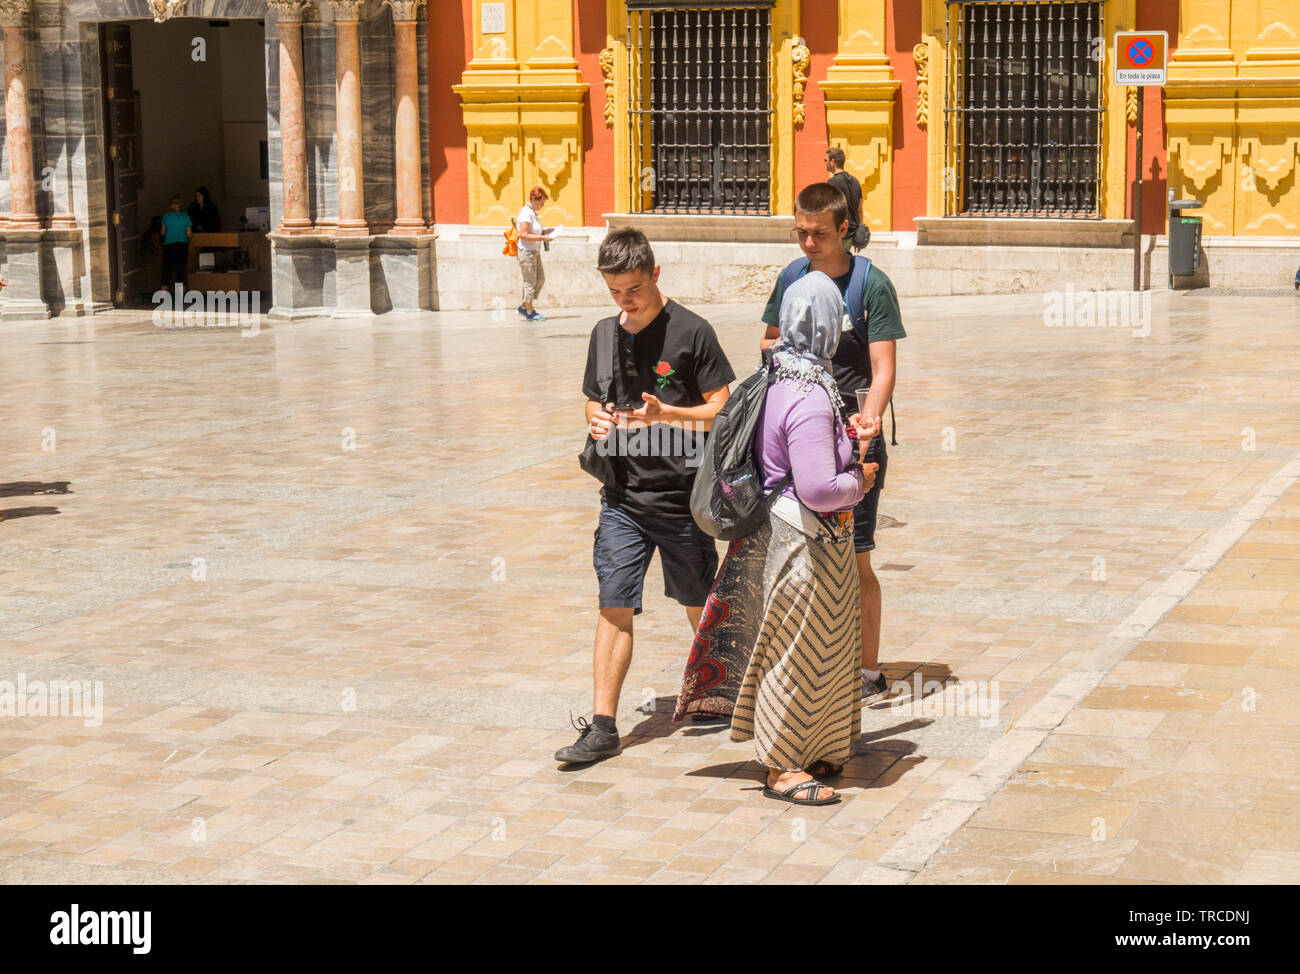 Les jeunes touristes passent par une femme mendiant dans les rues de Malaga, Andalousie, espagne. Banque D'Images